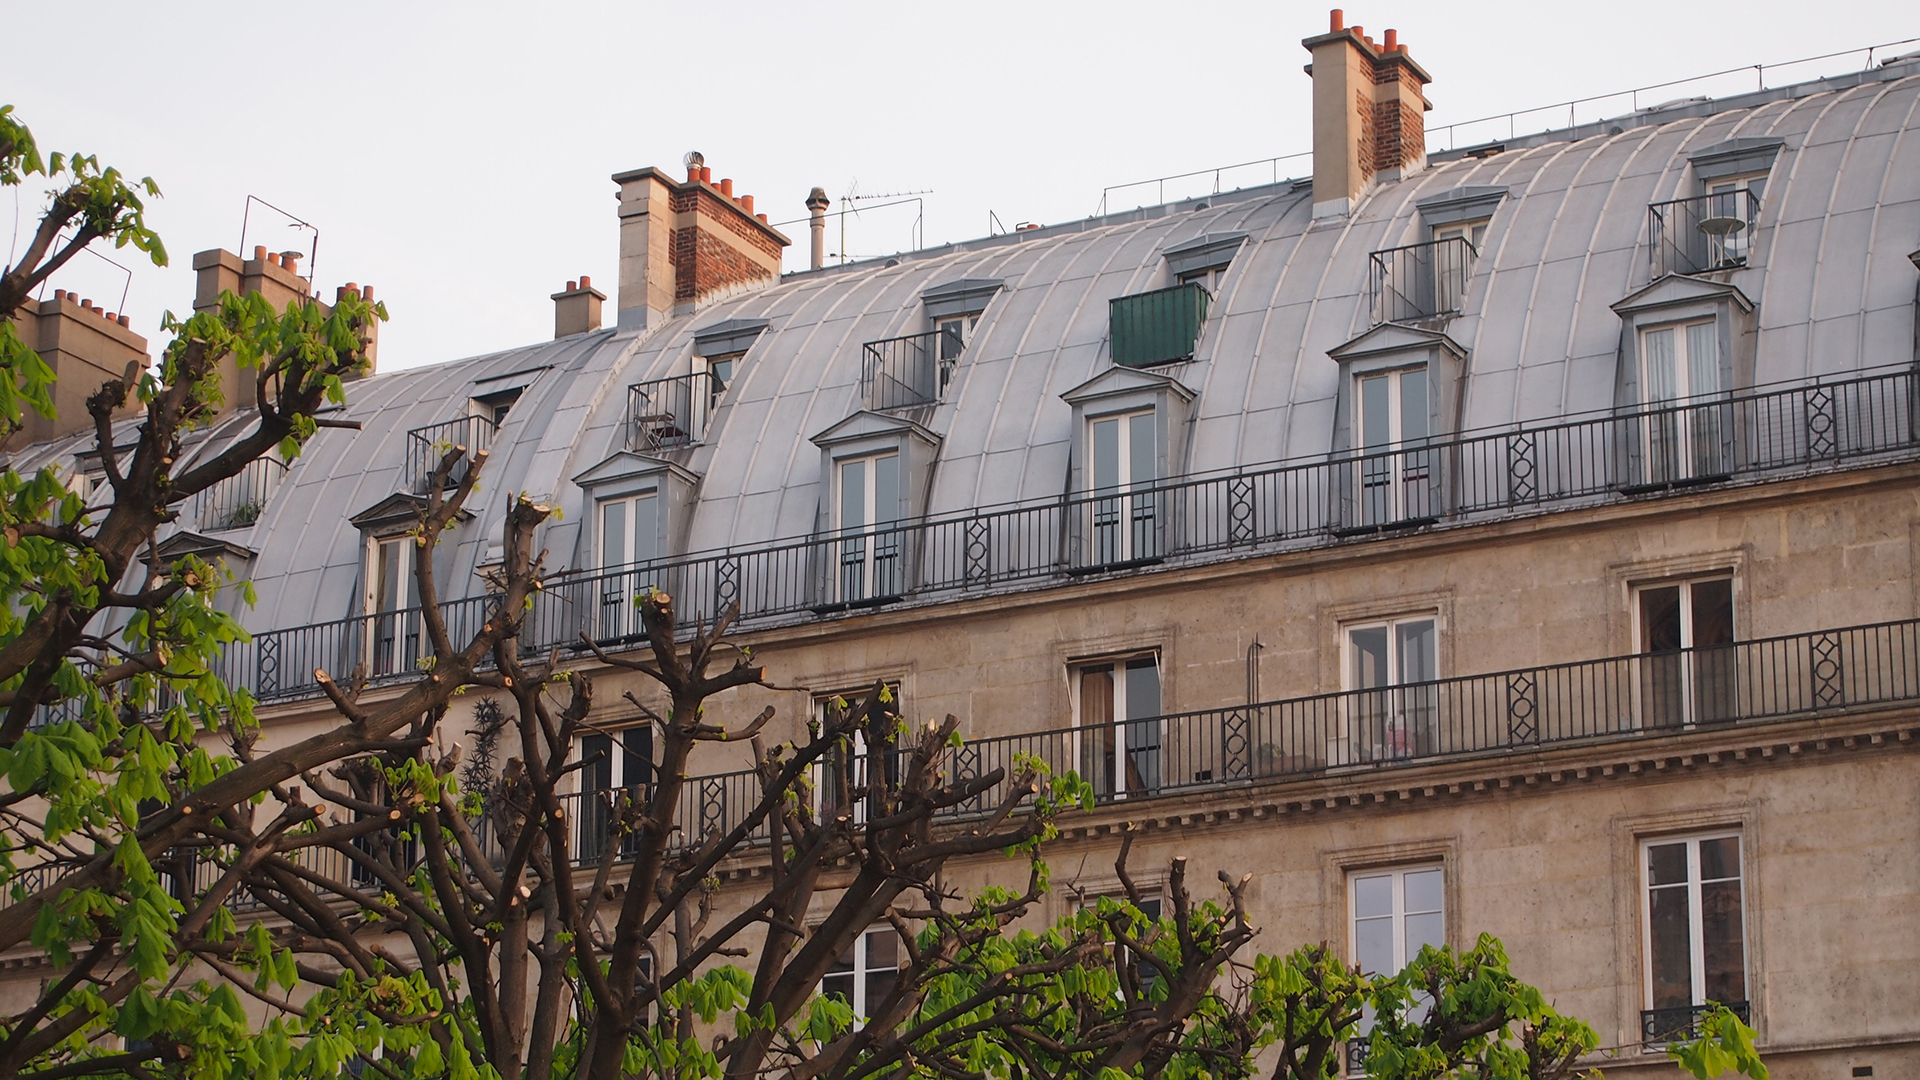 Blick auf ein Wohnhaus in Paris | picture alliance / akg-images